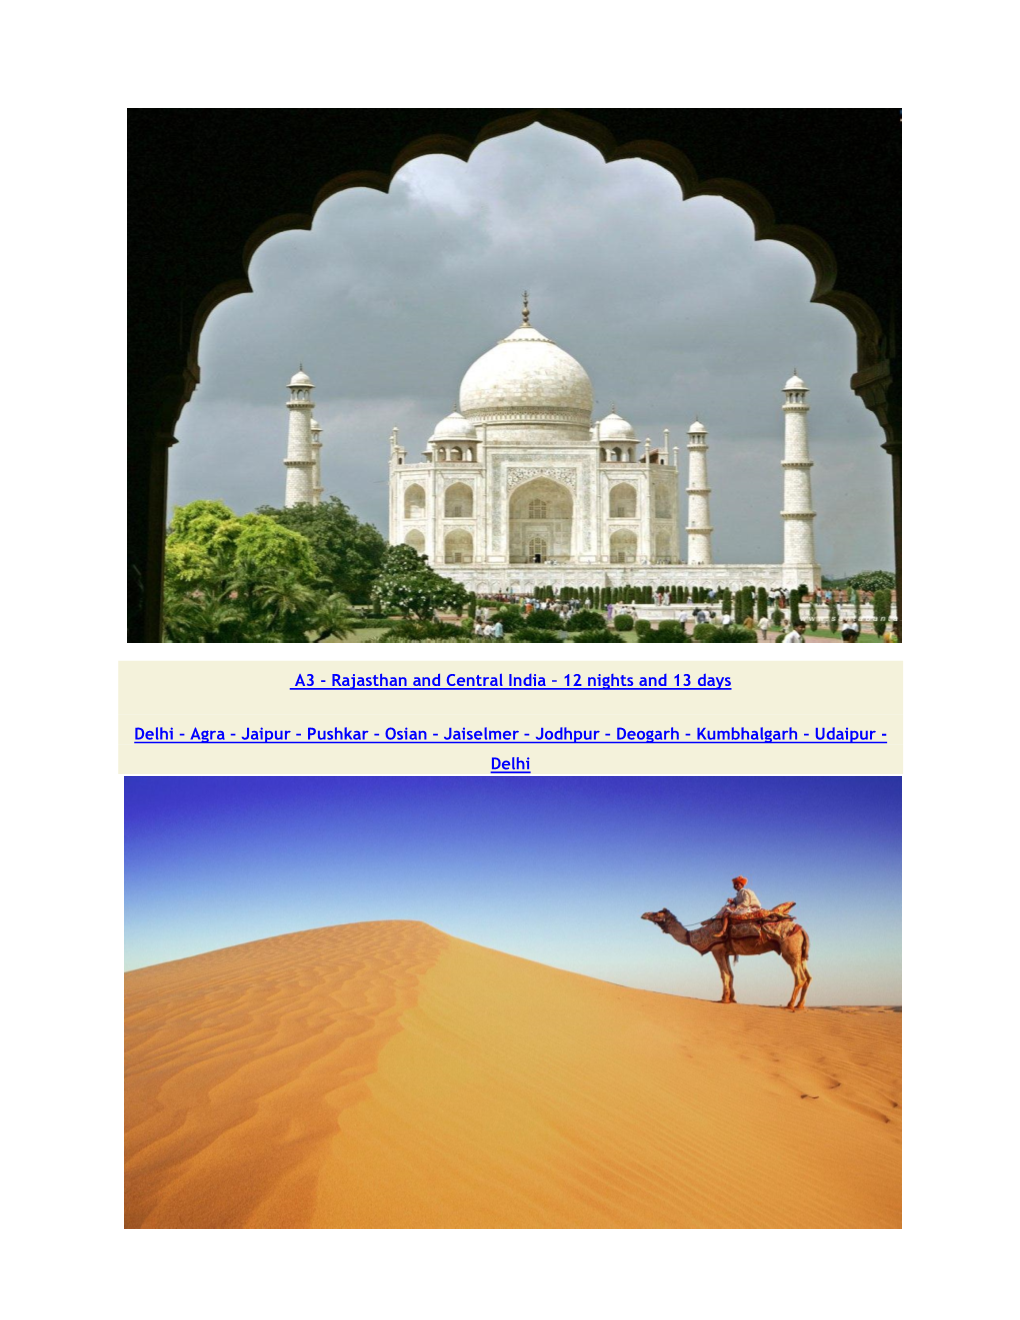 Agra – Jaipur – Pushkar – Osian – Jaiselmer – Jodhpur – Deogarh – Kumbhalgarh – Udaipur - Delhi Short Itinerary